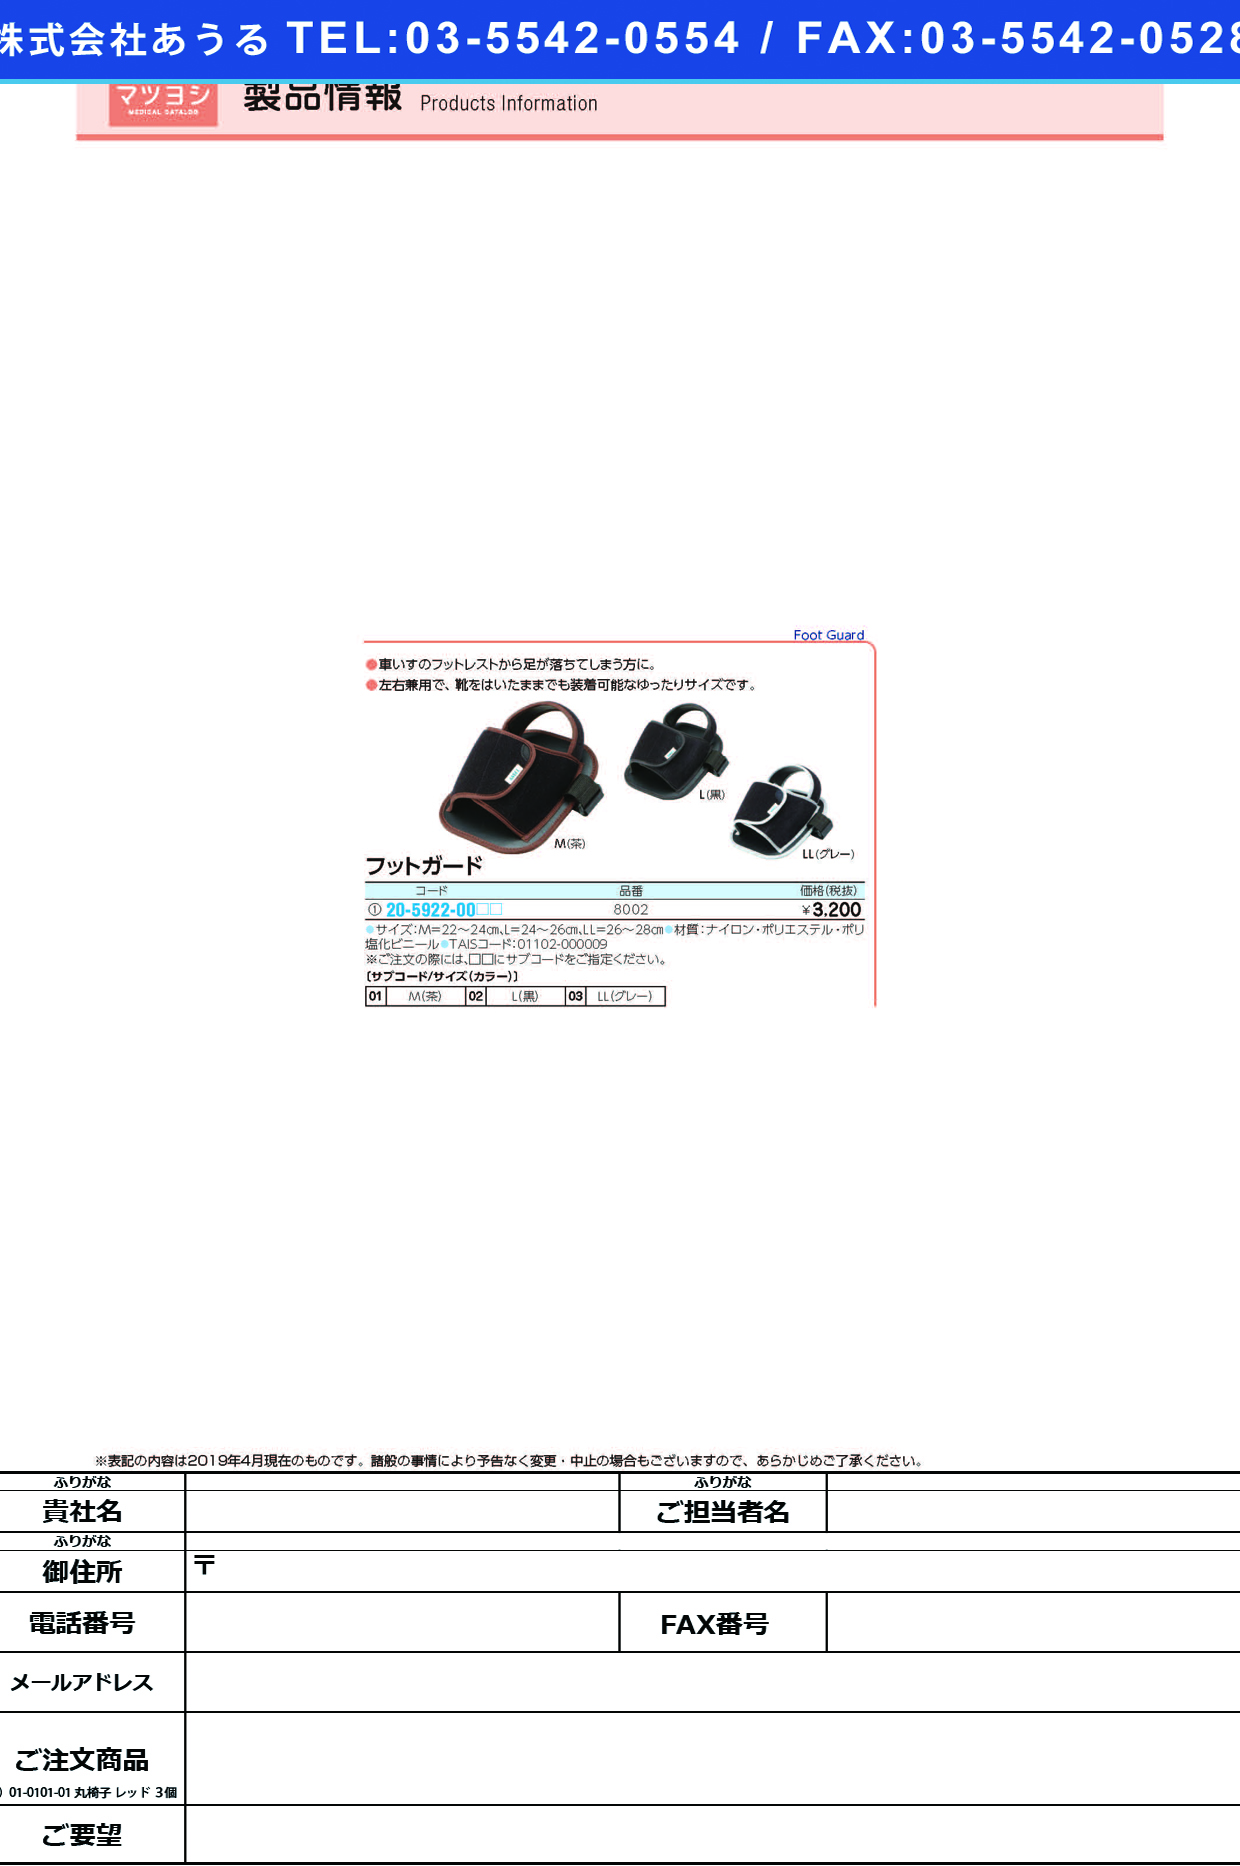 (20-5922-00)フットガード 8002 ﾌｯﾄｶﾞｰﾄﾞ 黒・Ｌ(日本エンゼル)【1個単位】【2019年カタログ商品】